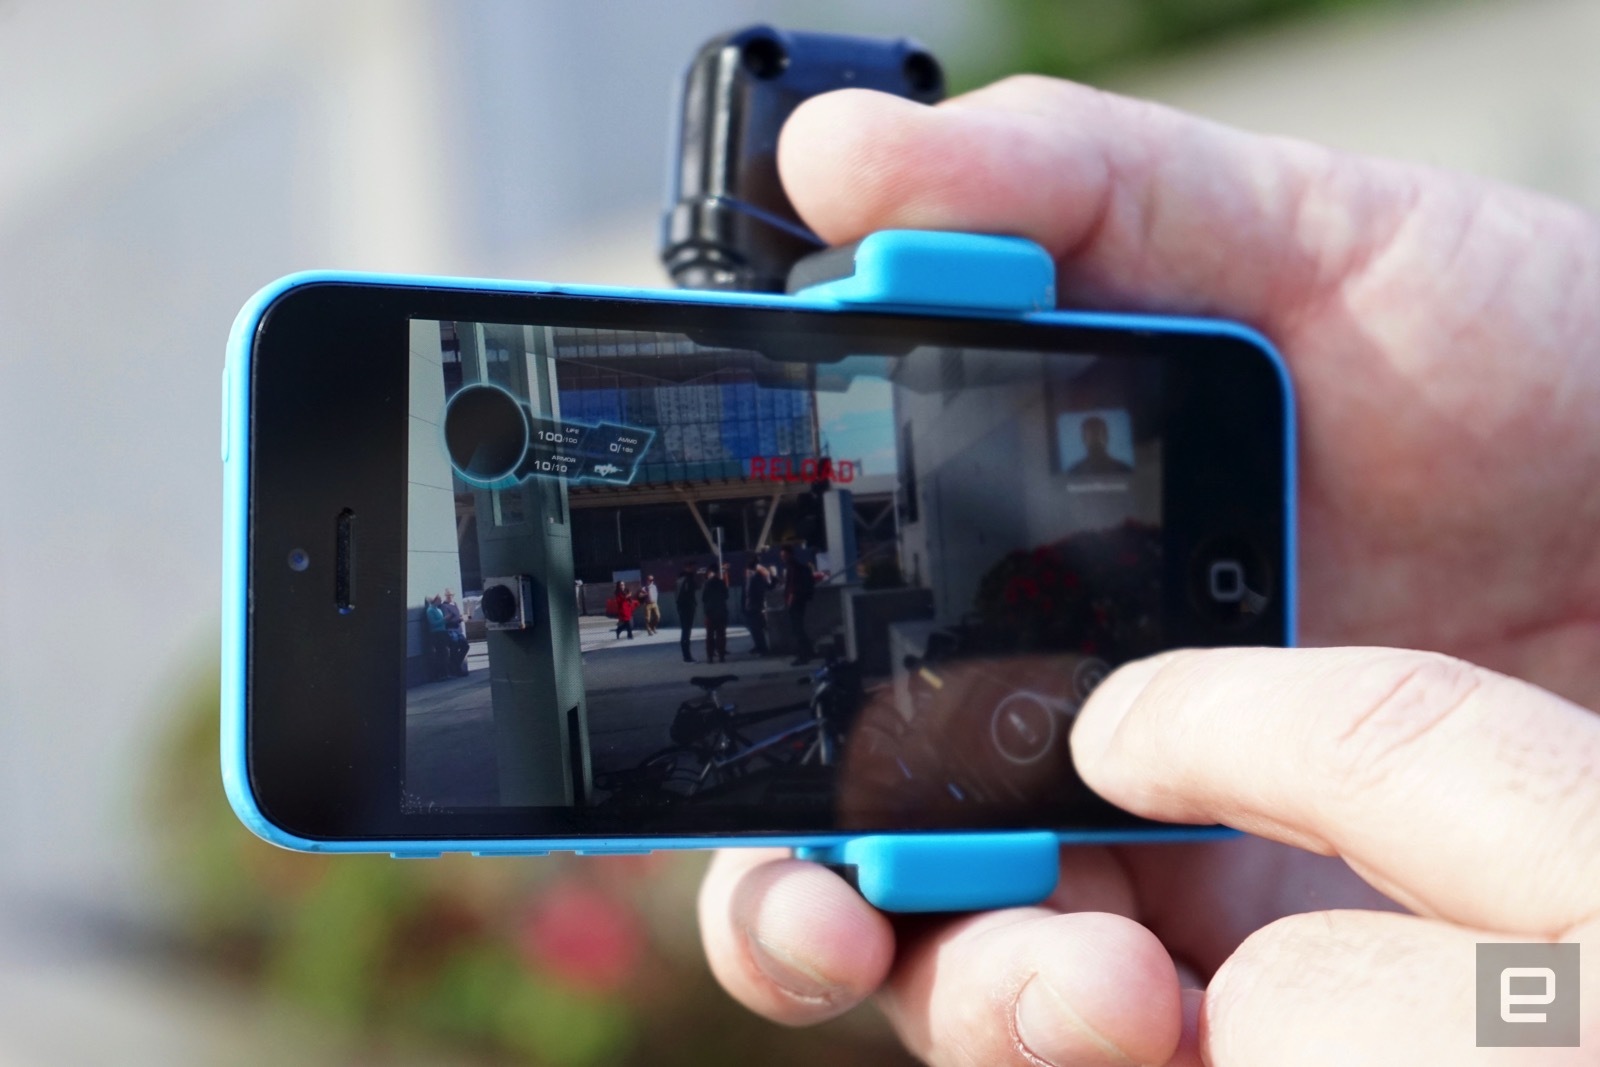 На GDC 2017 показали устройство, позволяющее играть в лазертаг при помощи смартфона 2